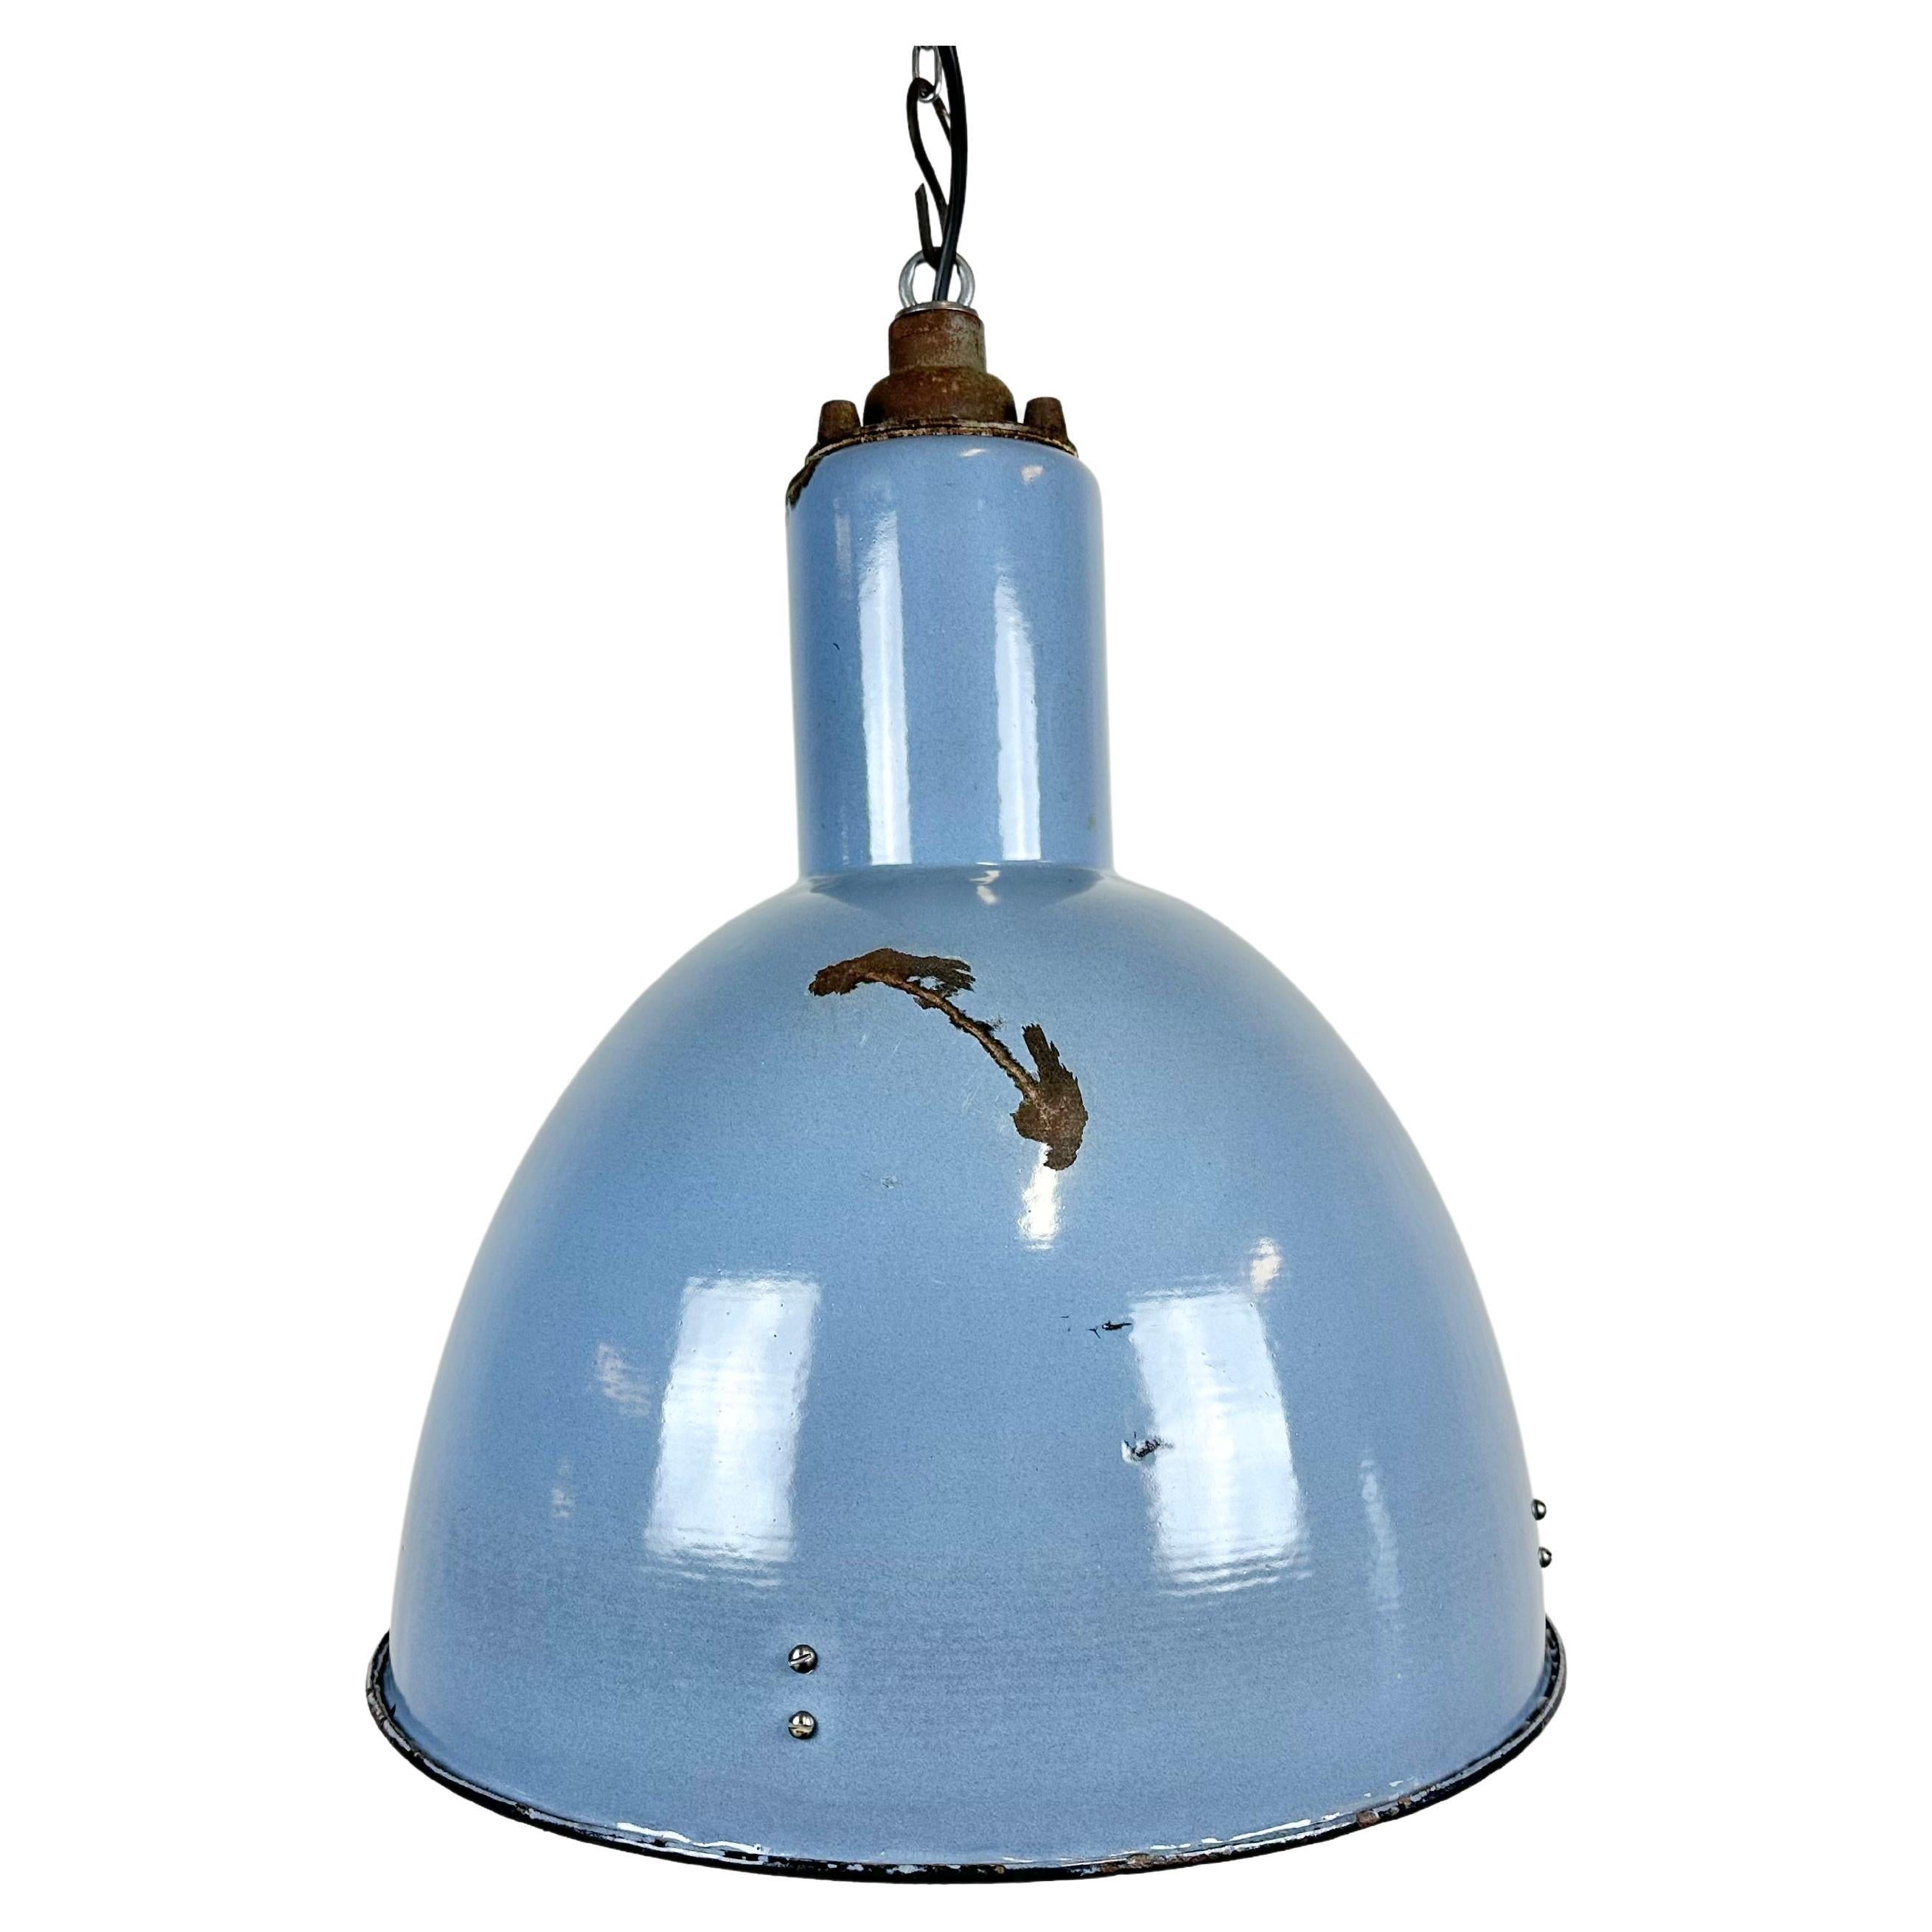 Bauhaus Blue Enamel Industrial Pendant Lamp, 1950s For Sale